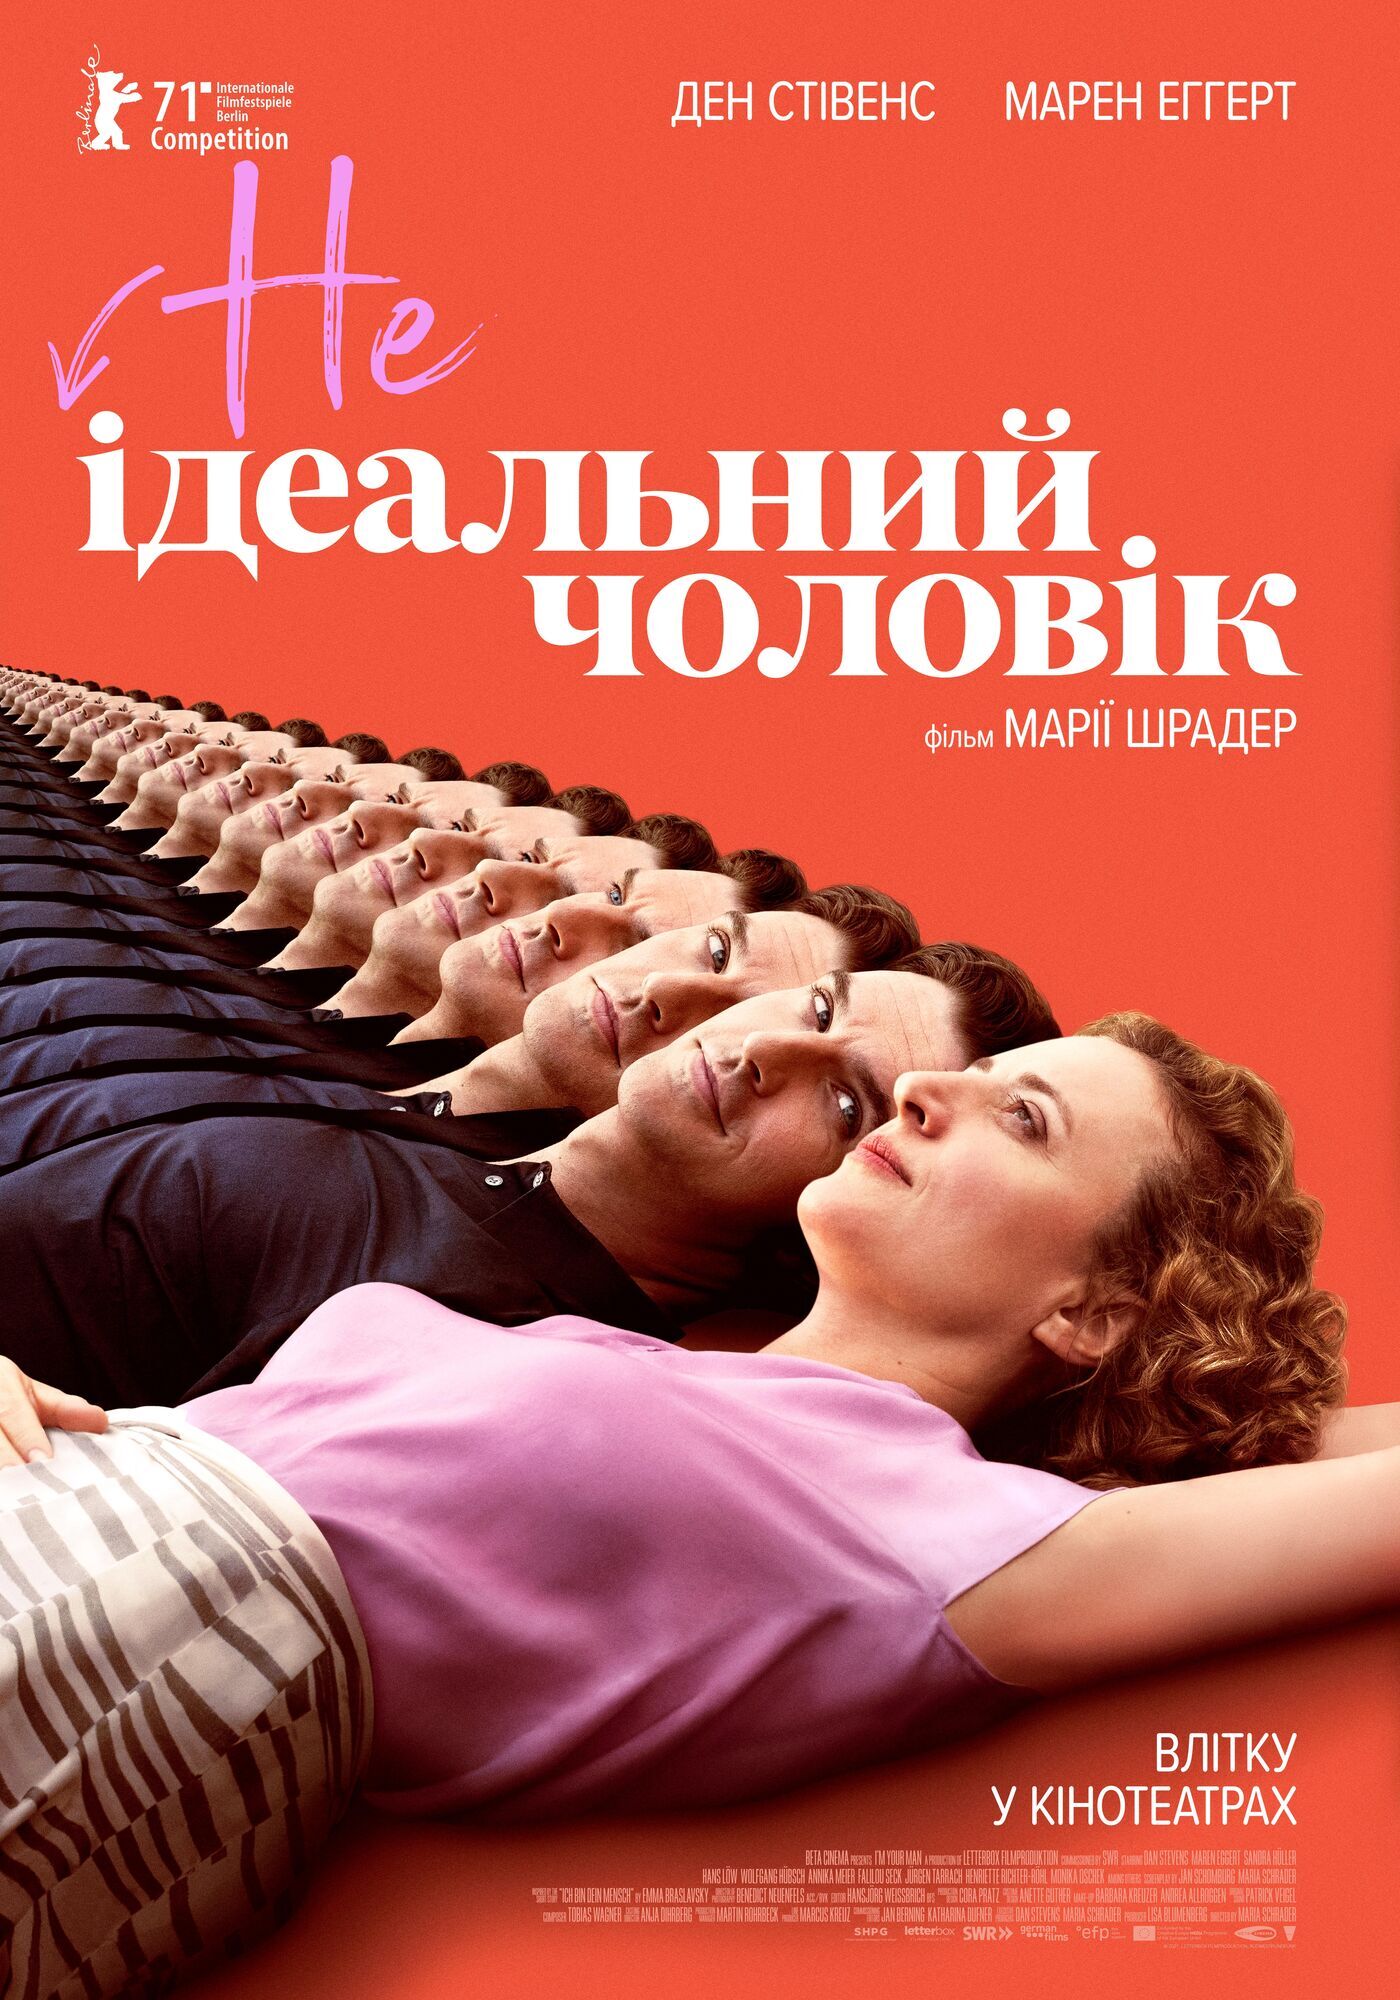 "НЕідеальний чоловік" вийде в українських кінотеатрах із 5 серпня